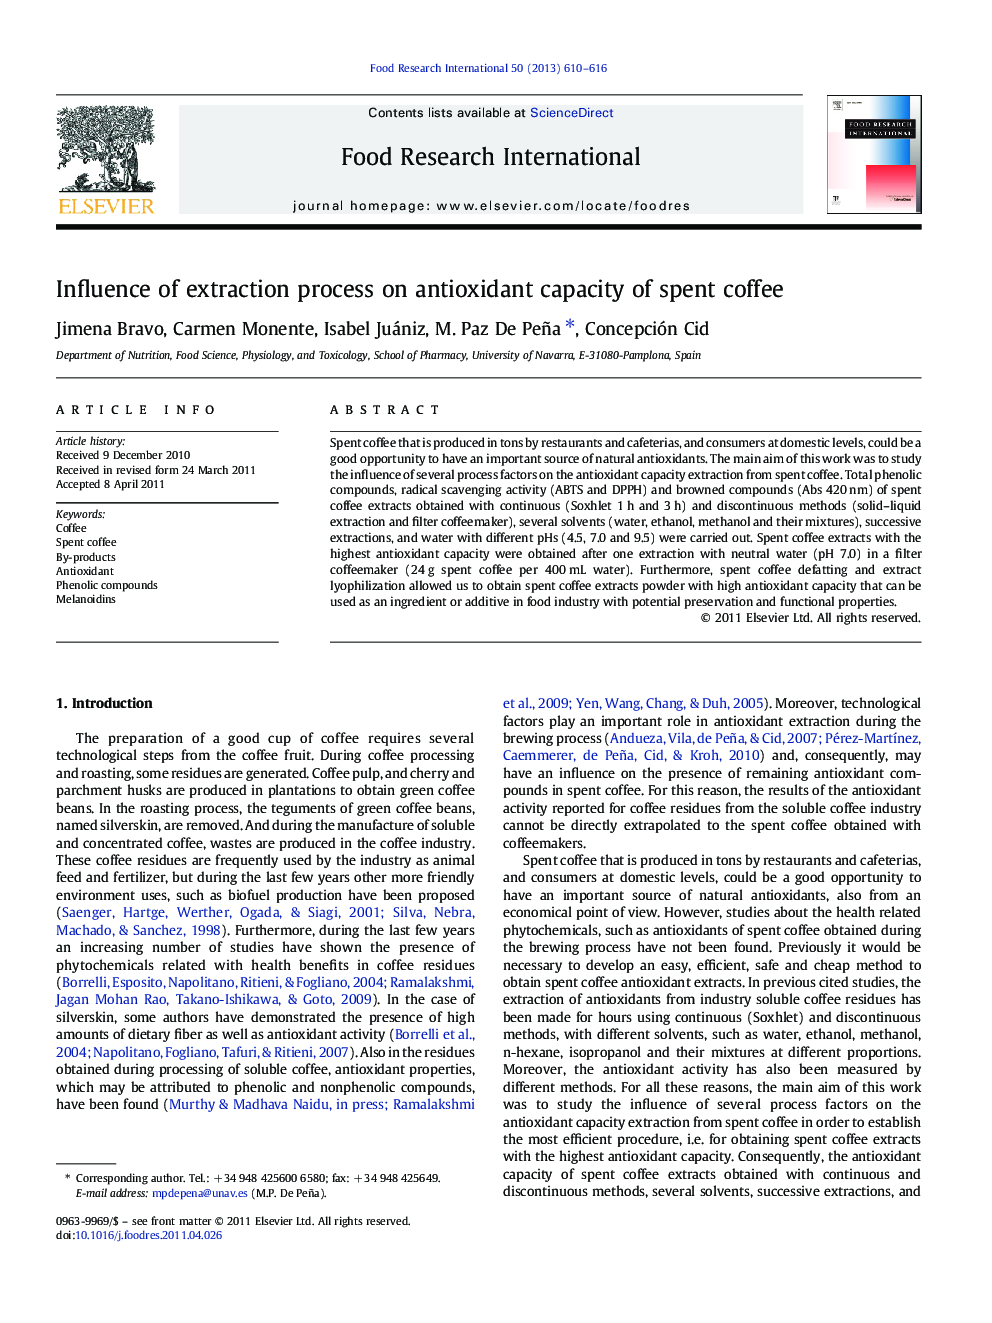 تأثیر فرایند استخراج بر ظرفیت آنتی اکسیدانی قهوه مصرف شده 